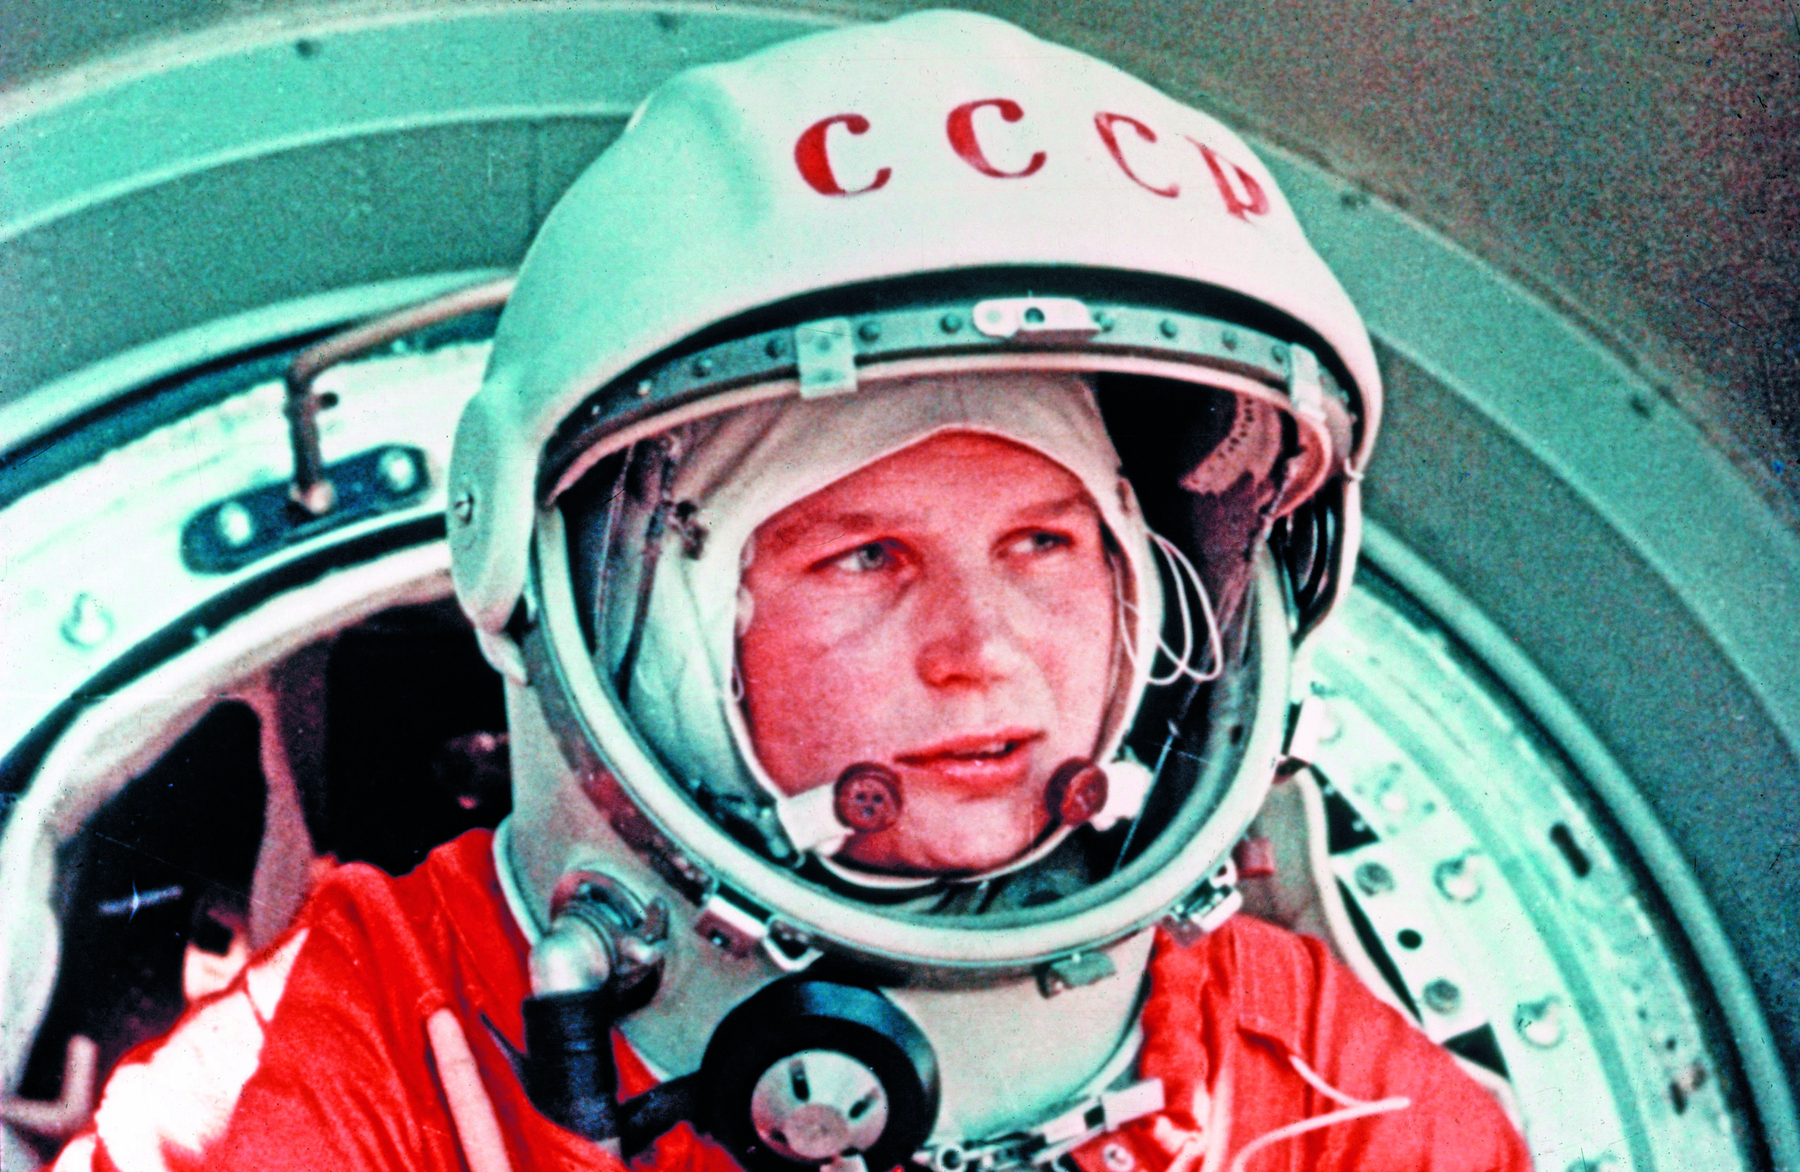 Fotografia. Retrato de uma mulher de olhos claros, vestindo capacete e traje laranja de astronauta em uma nave espacial.